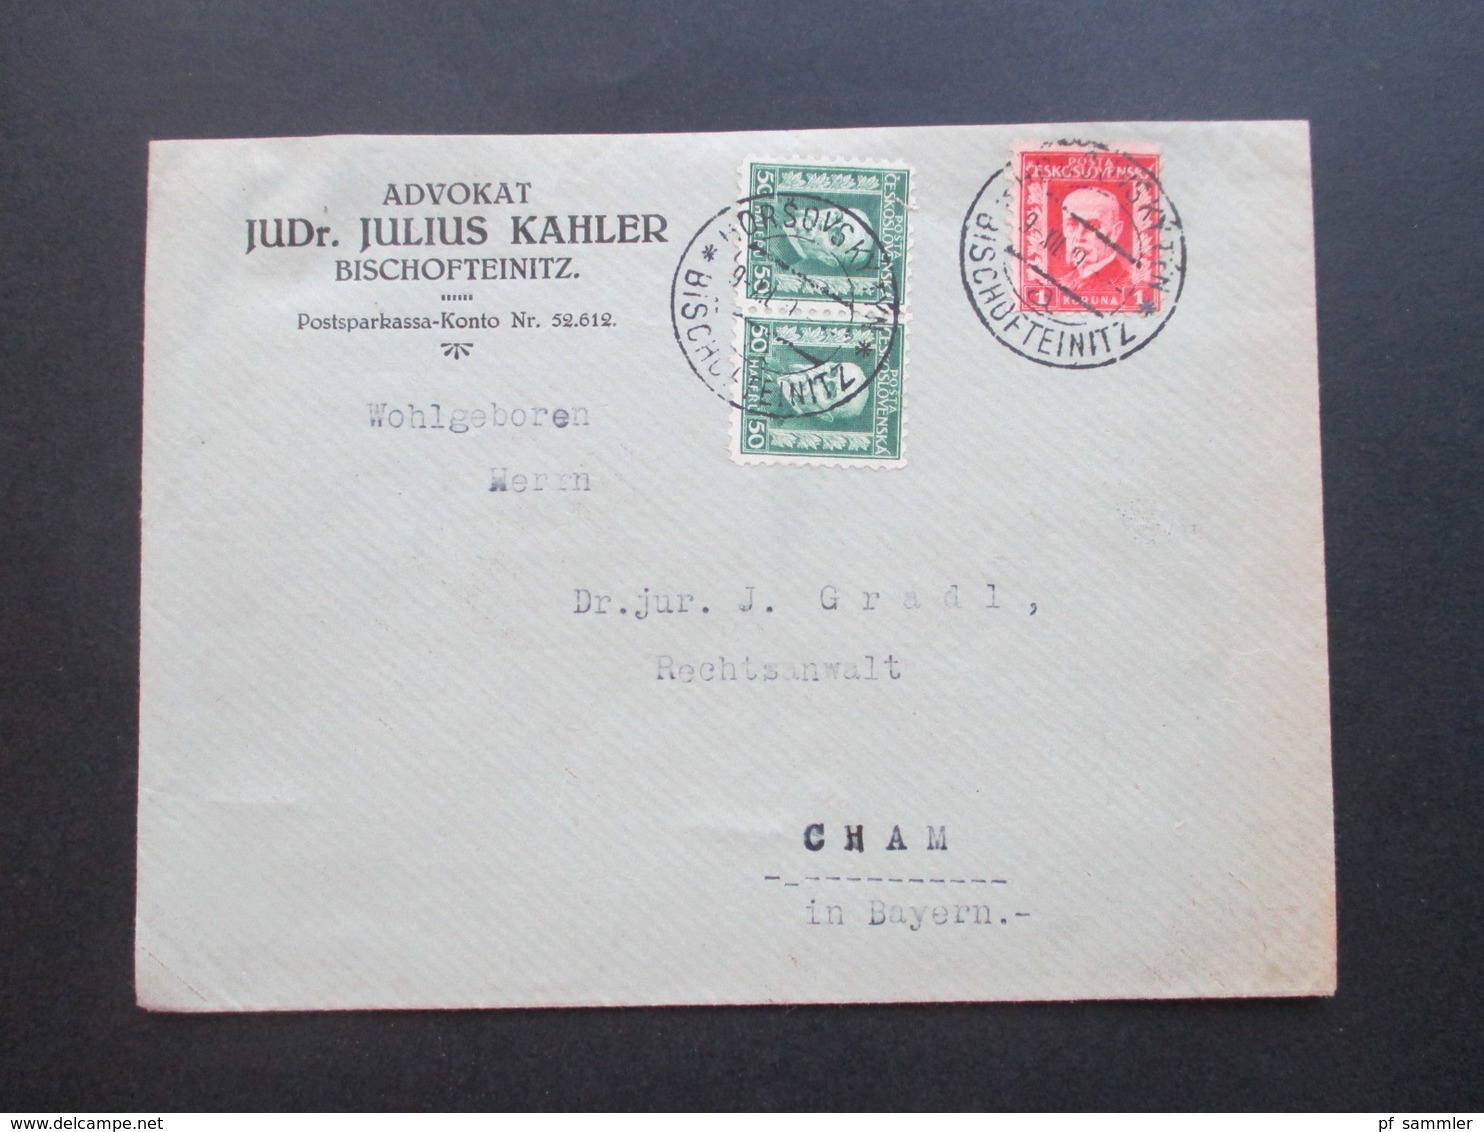 CSSR / Sudetenland 1929 Beleg Aus Bischofteinitz Advokat JUDr. Julius Kahler Zweisprachiger Stempel - Storia Postale